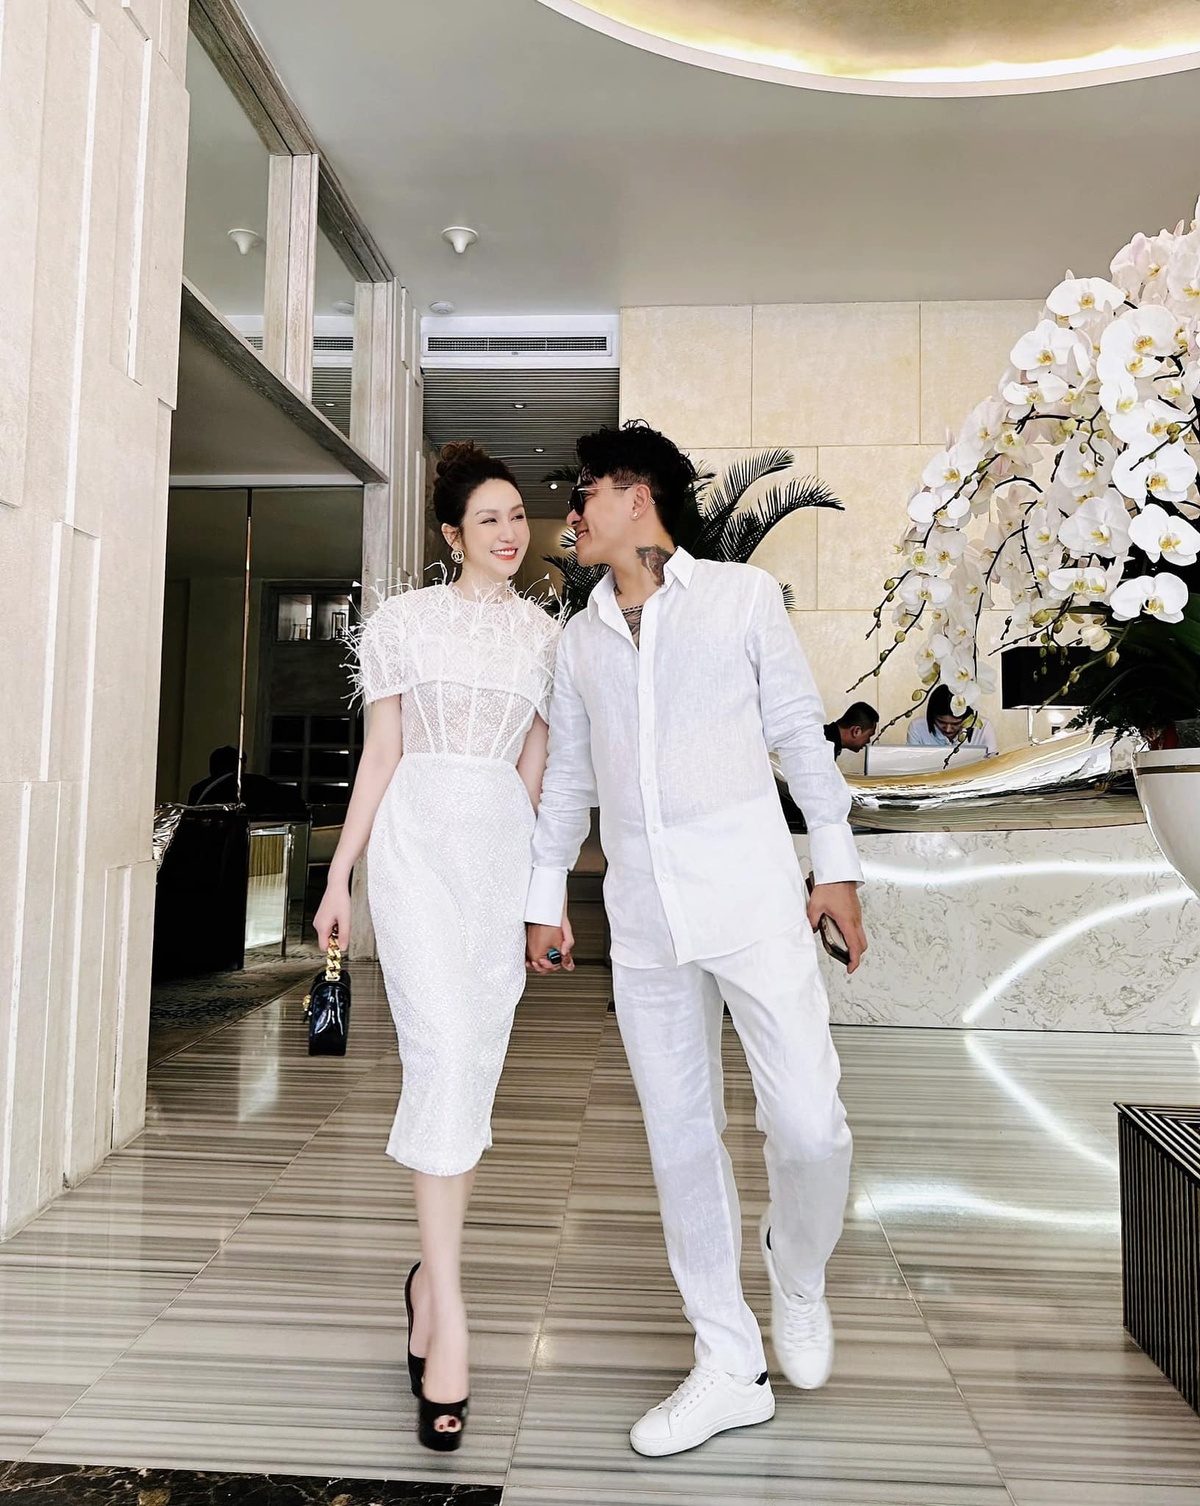 Tiểu thư Hà thành vừa kỷ niệm 10 năm ngày cưới với chồng ca sĩ hơn 12 tuổi: Sở hữu toàn BĐS đắc địa, xe hơi tiền tỷ, U35 viên mãn - Ảnh 5.